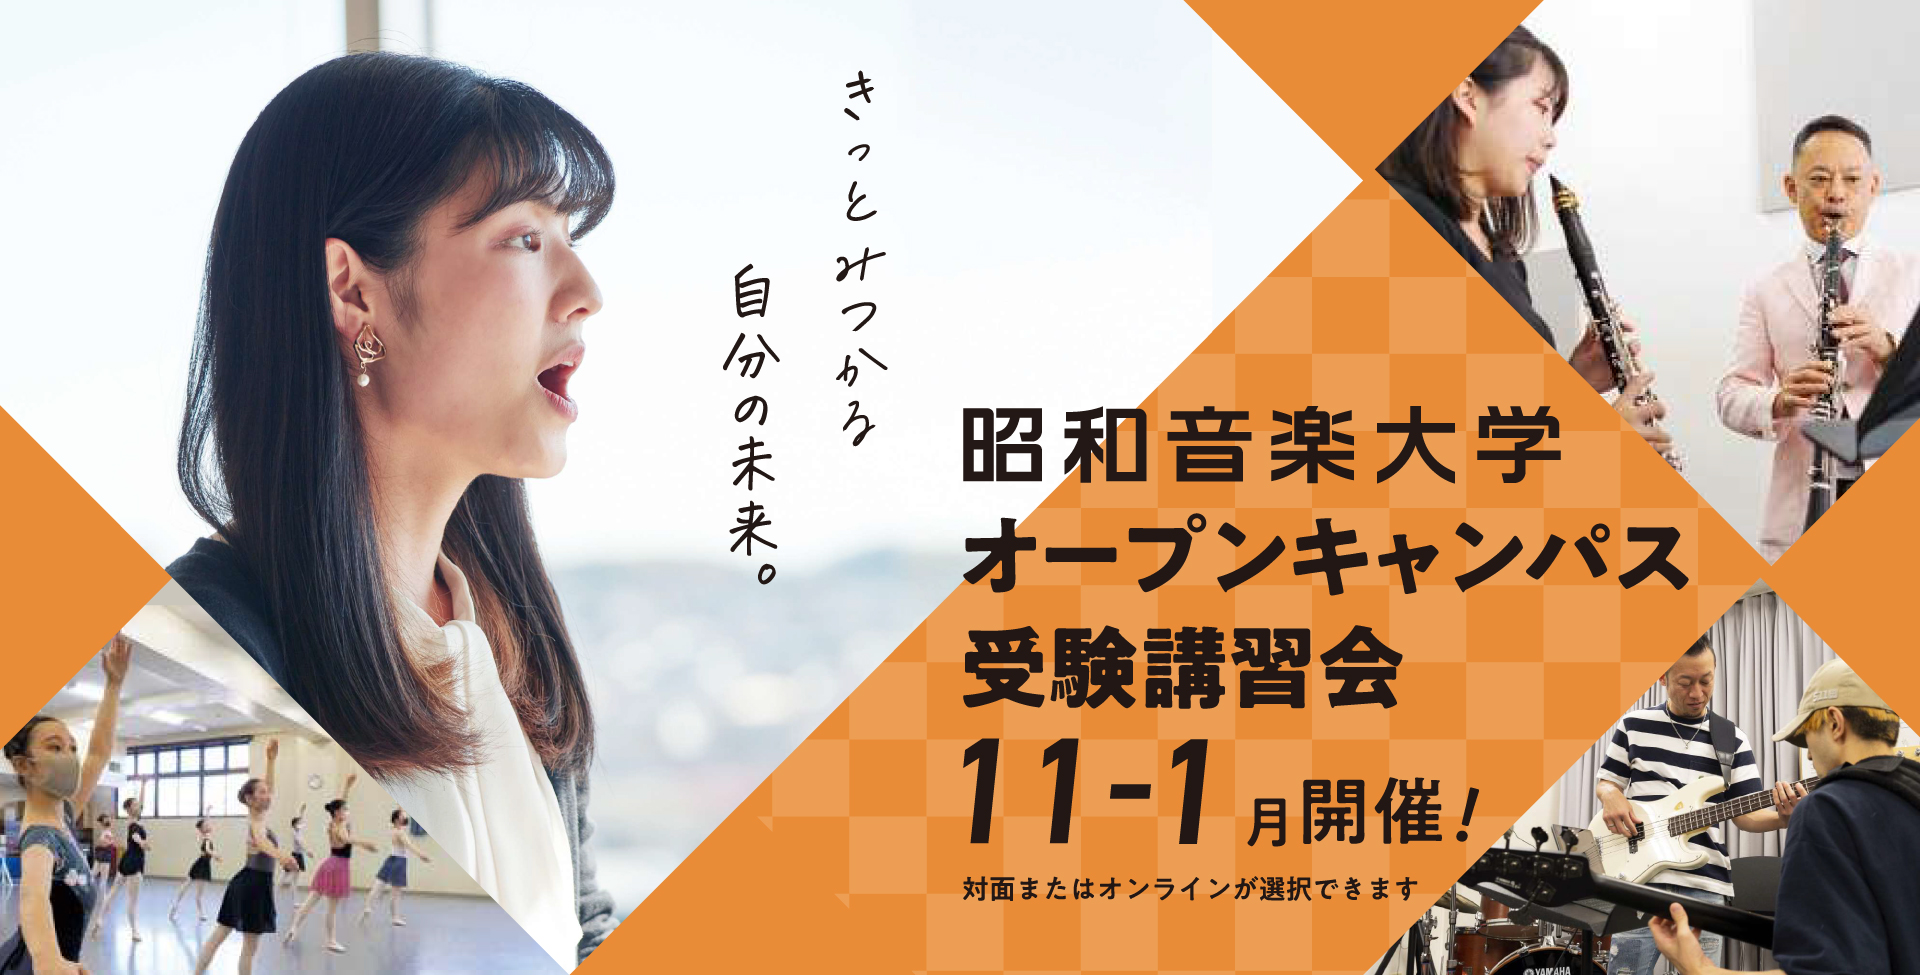 昭和音楽大学 オープンキャンパス・受験講習会 8-10月開催！ 対面またはオンラインが選択できます